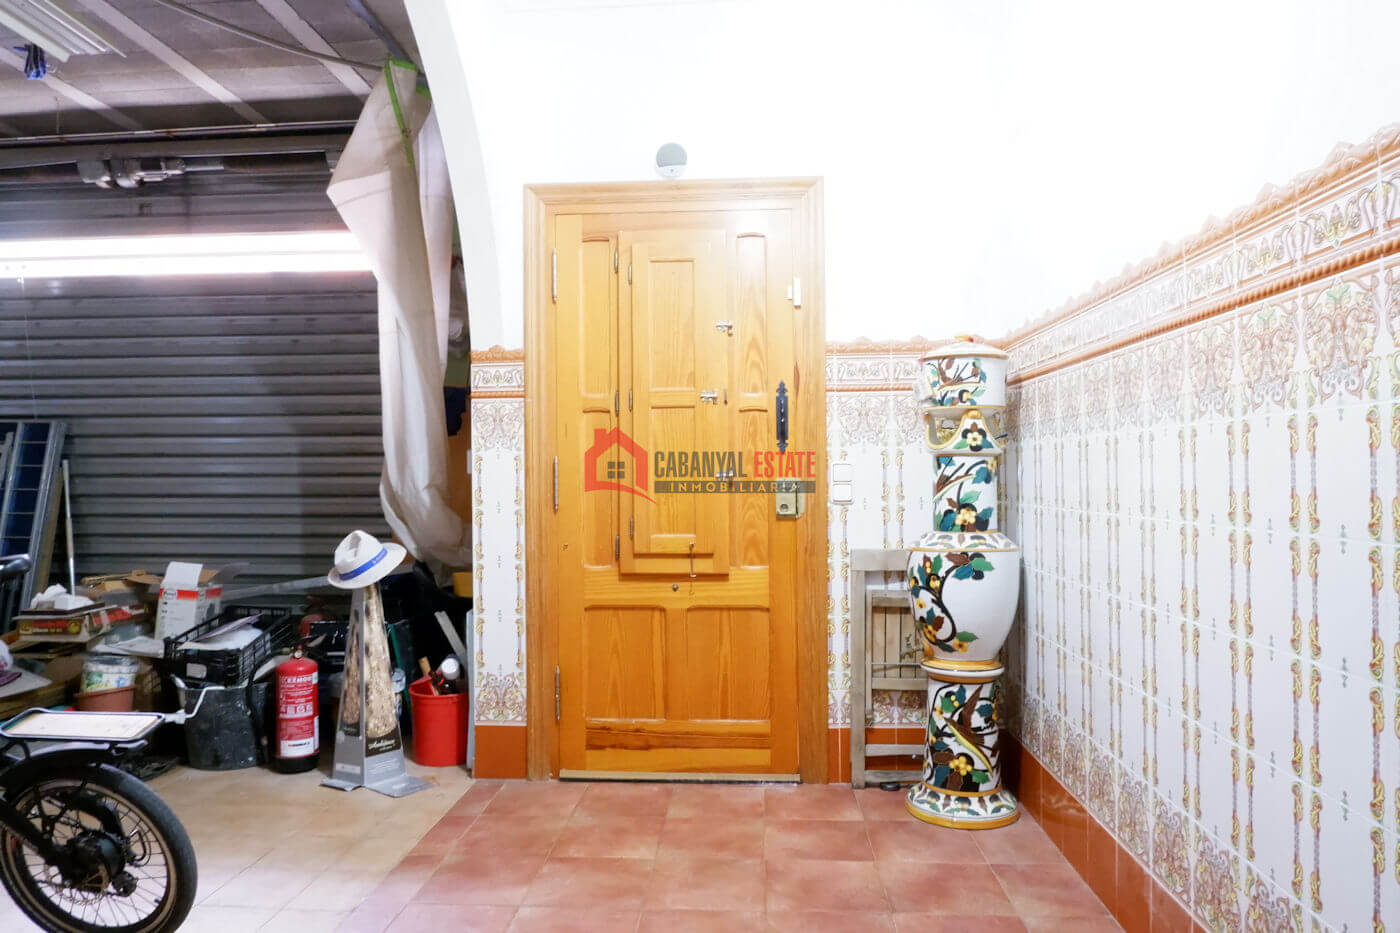 A vendre maison spacieuse avec garage à El Cabanyal